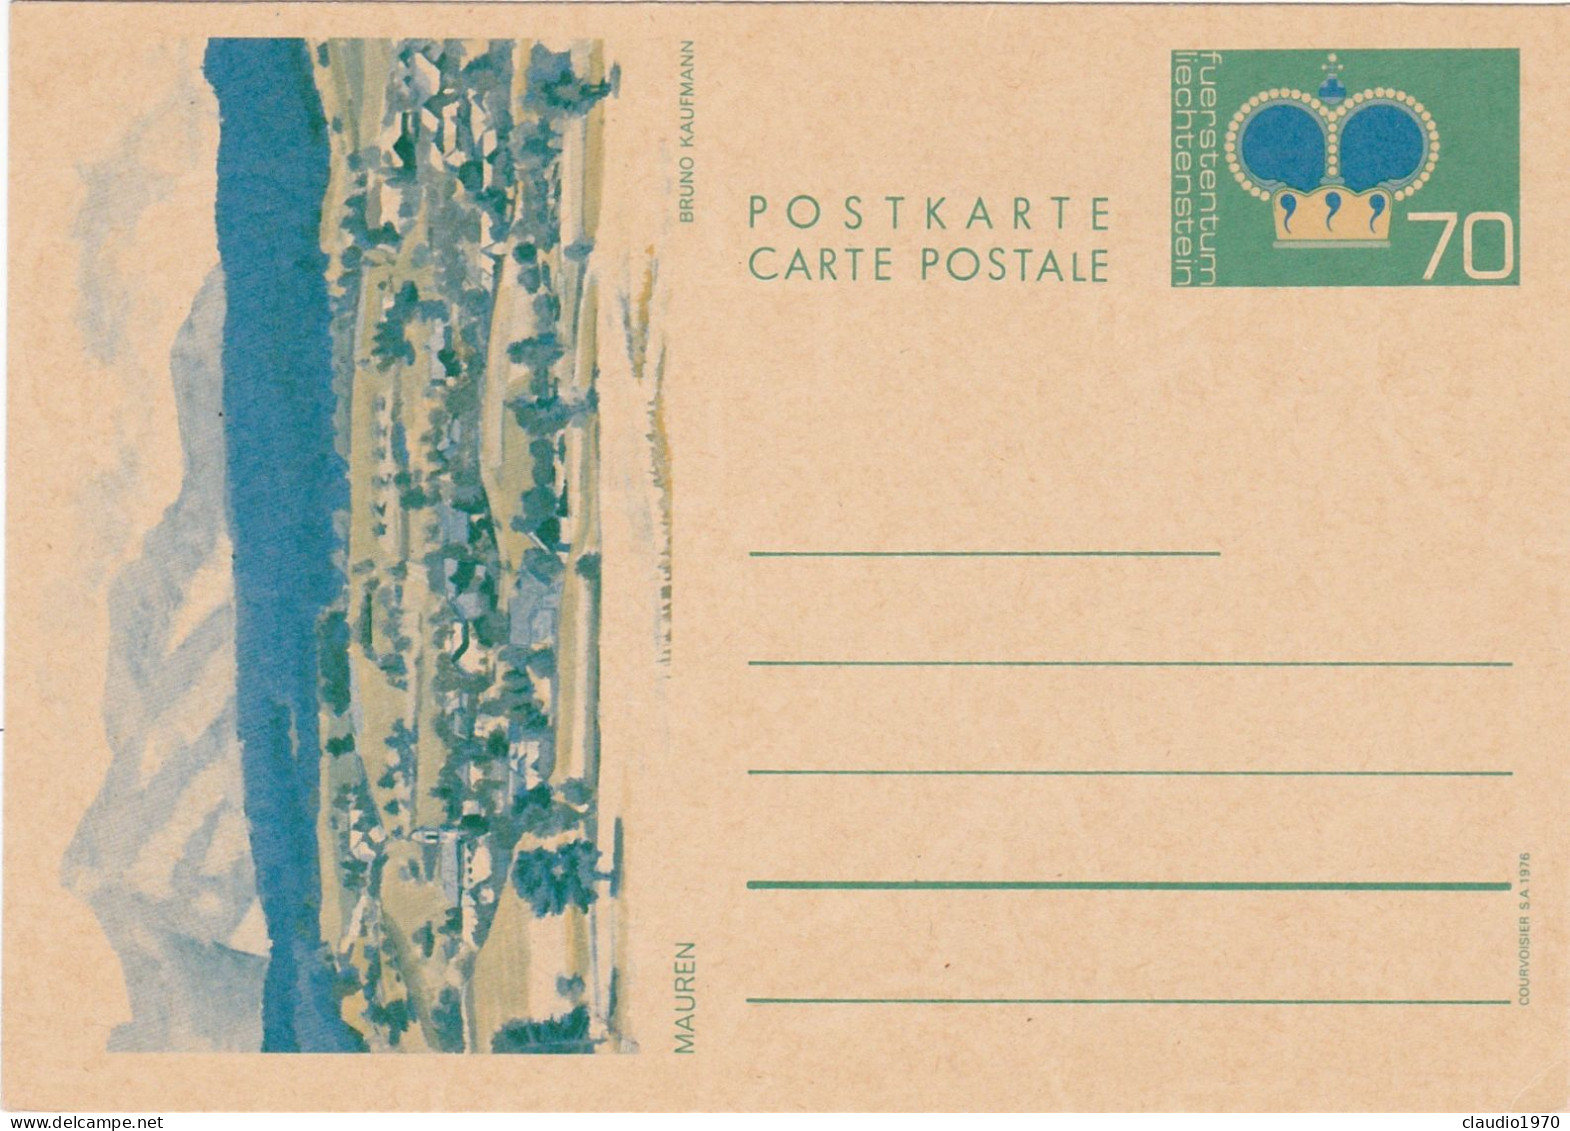 LIECHTENSTEIN - INTERO POSTALE - NUOVO - Stamped Stationery